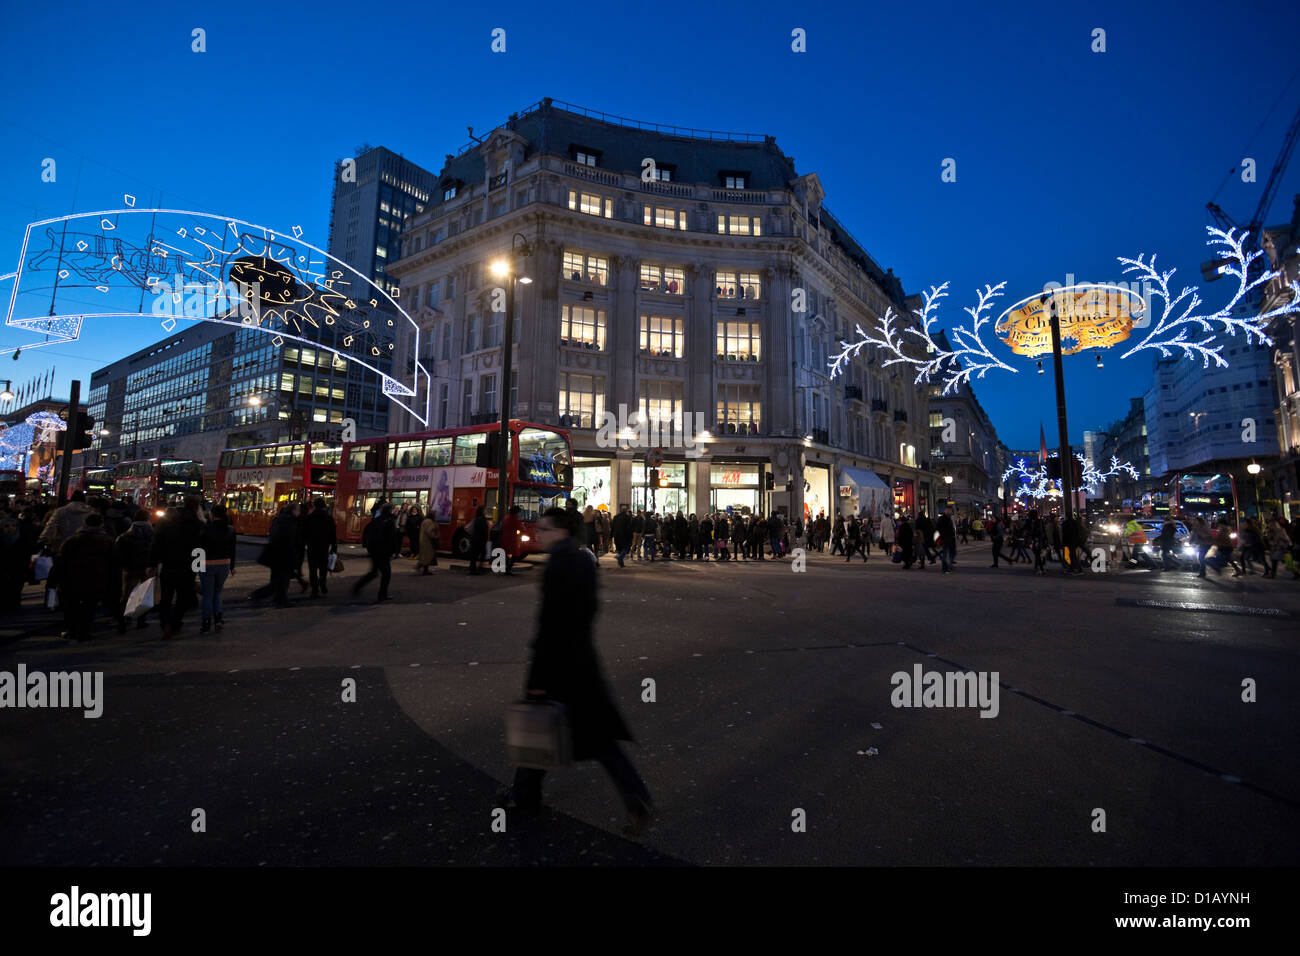 Christmas lights and decoration on Oxford Circus, London, England, UK. Stock Photo